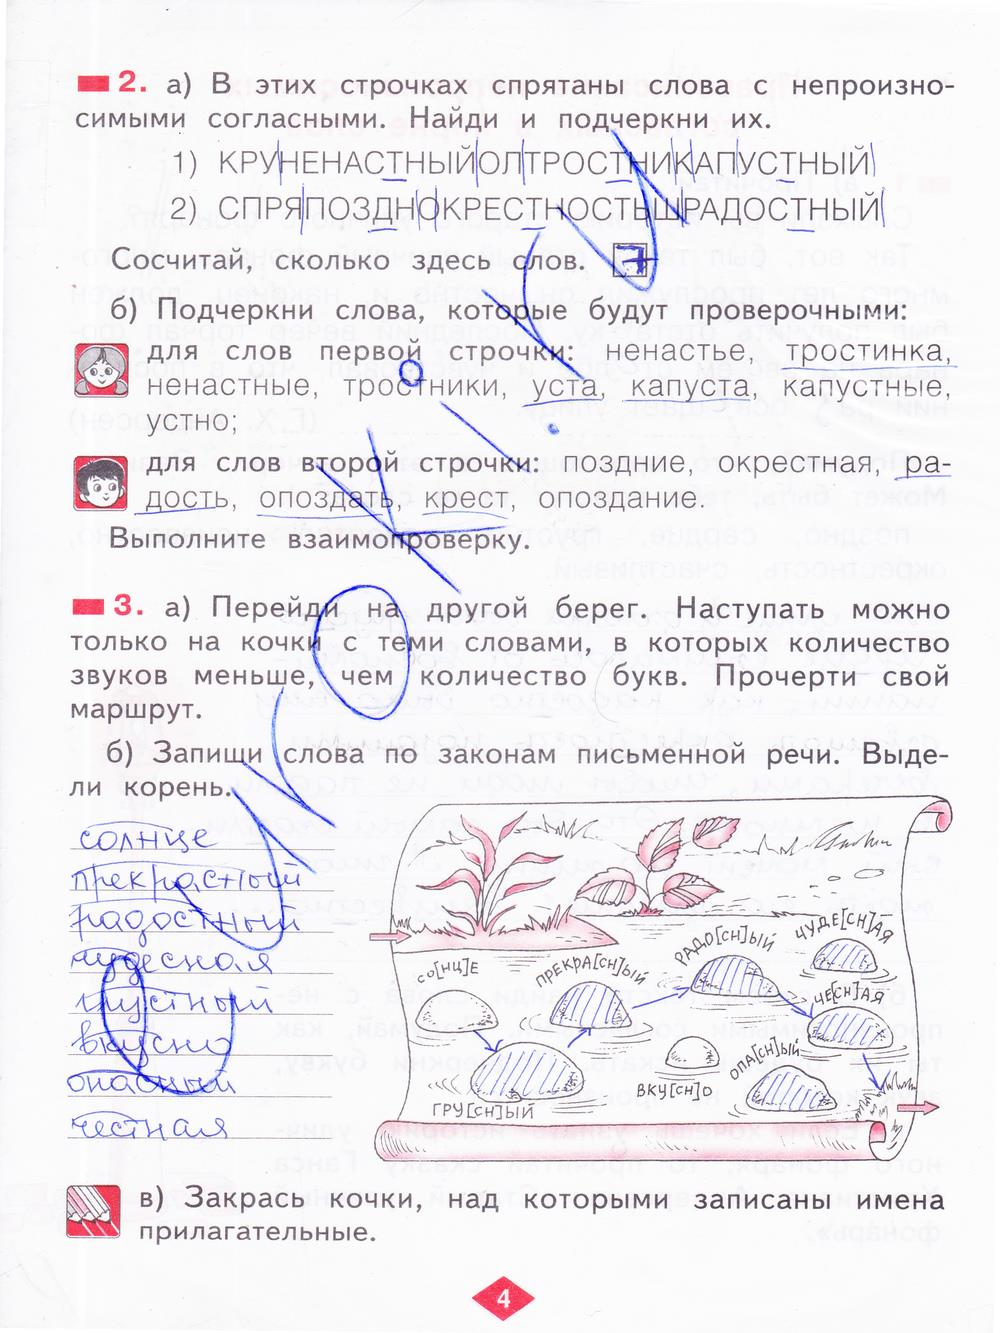 гдз 2 класс рабочая тетрадь часть 3 страница 4 русский язык Яковлева